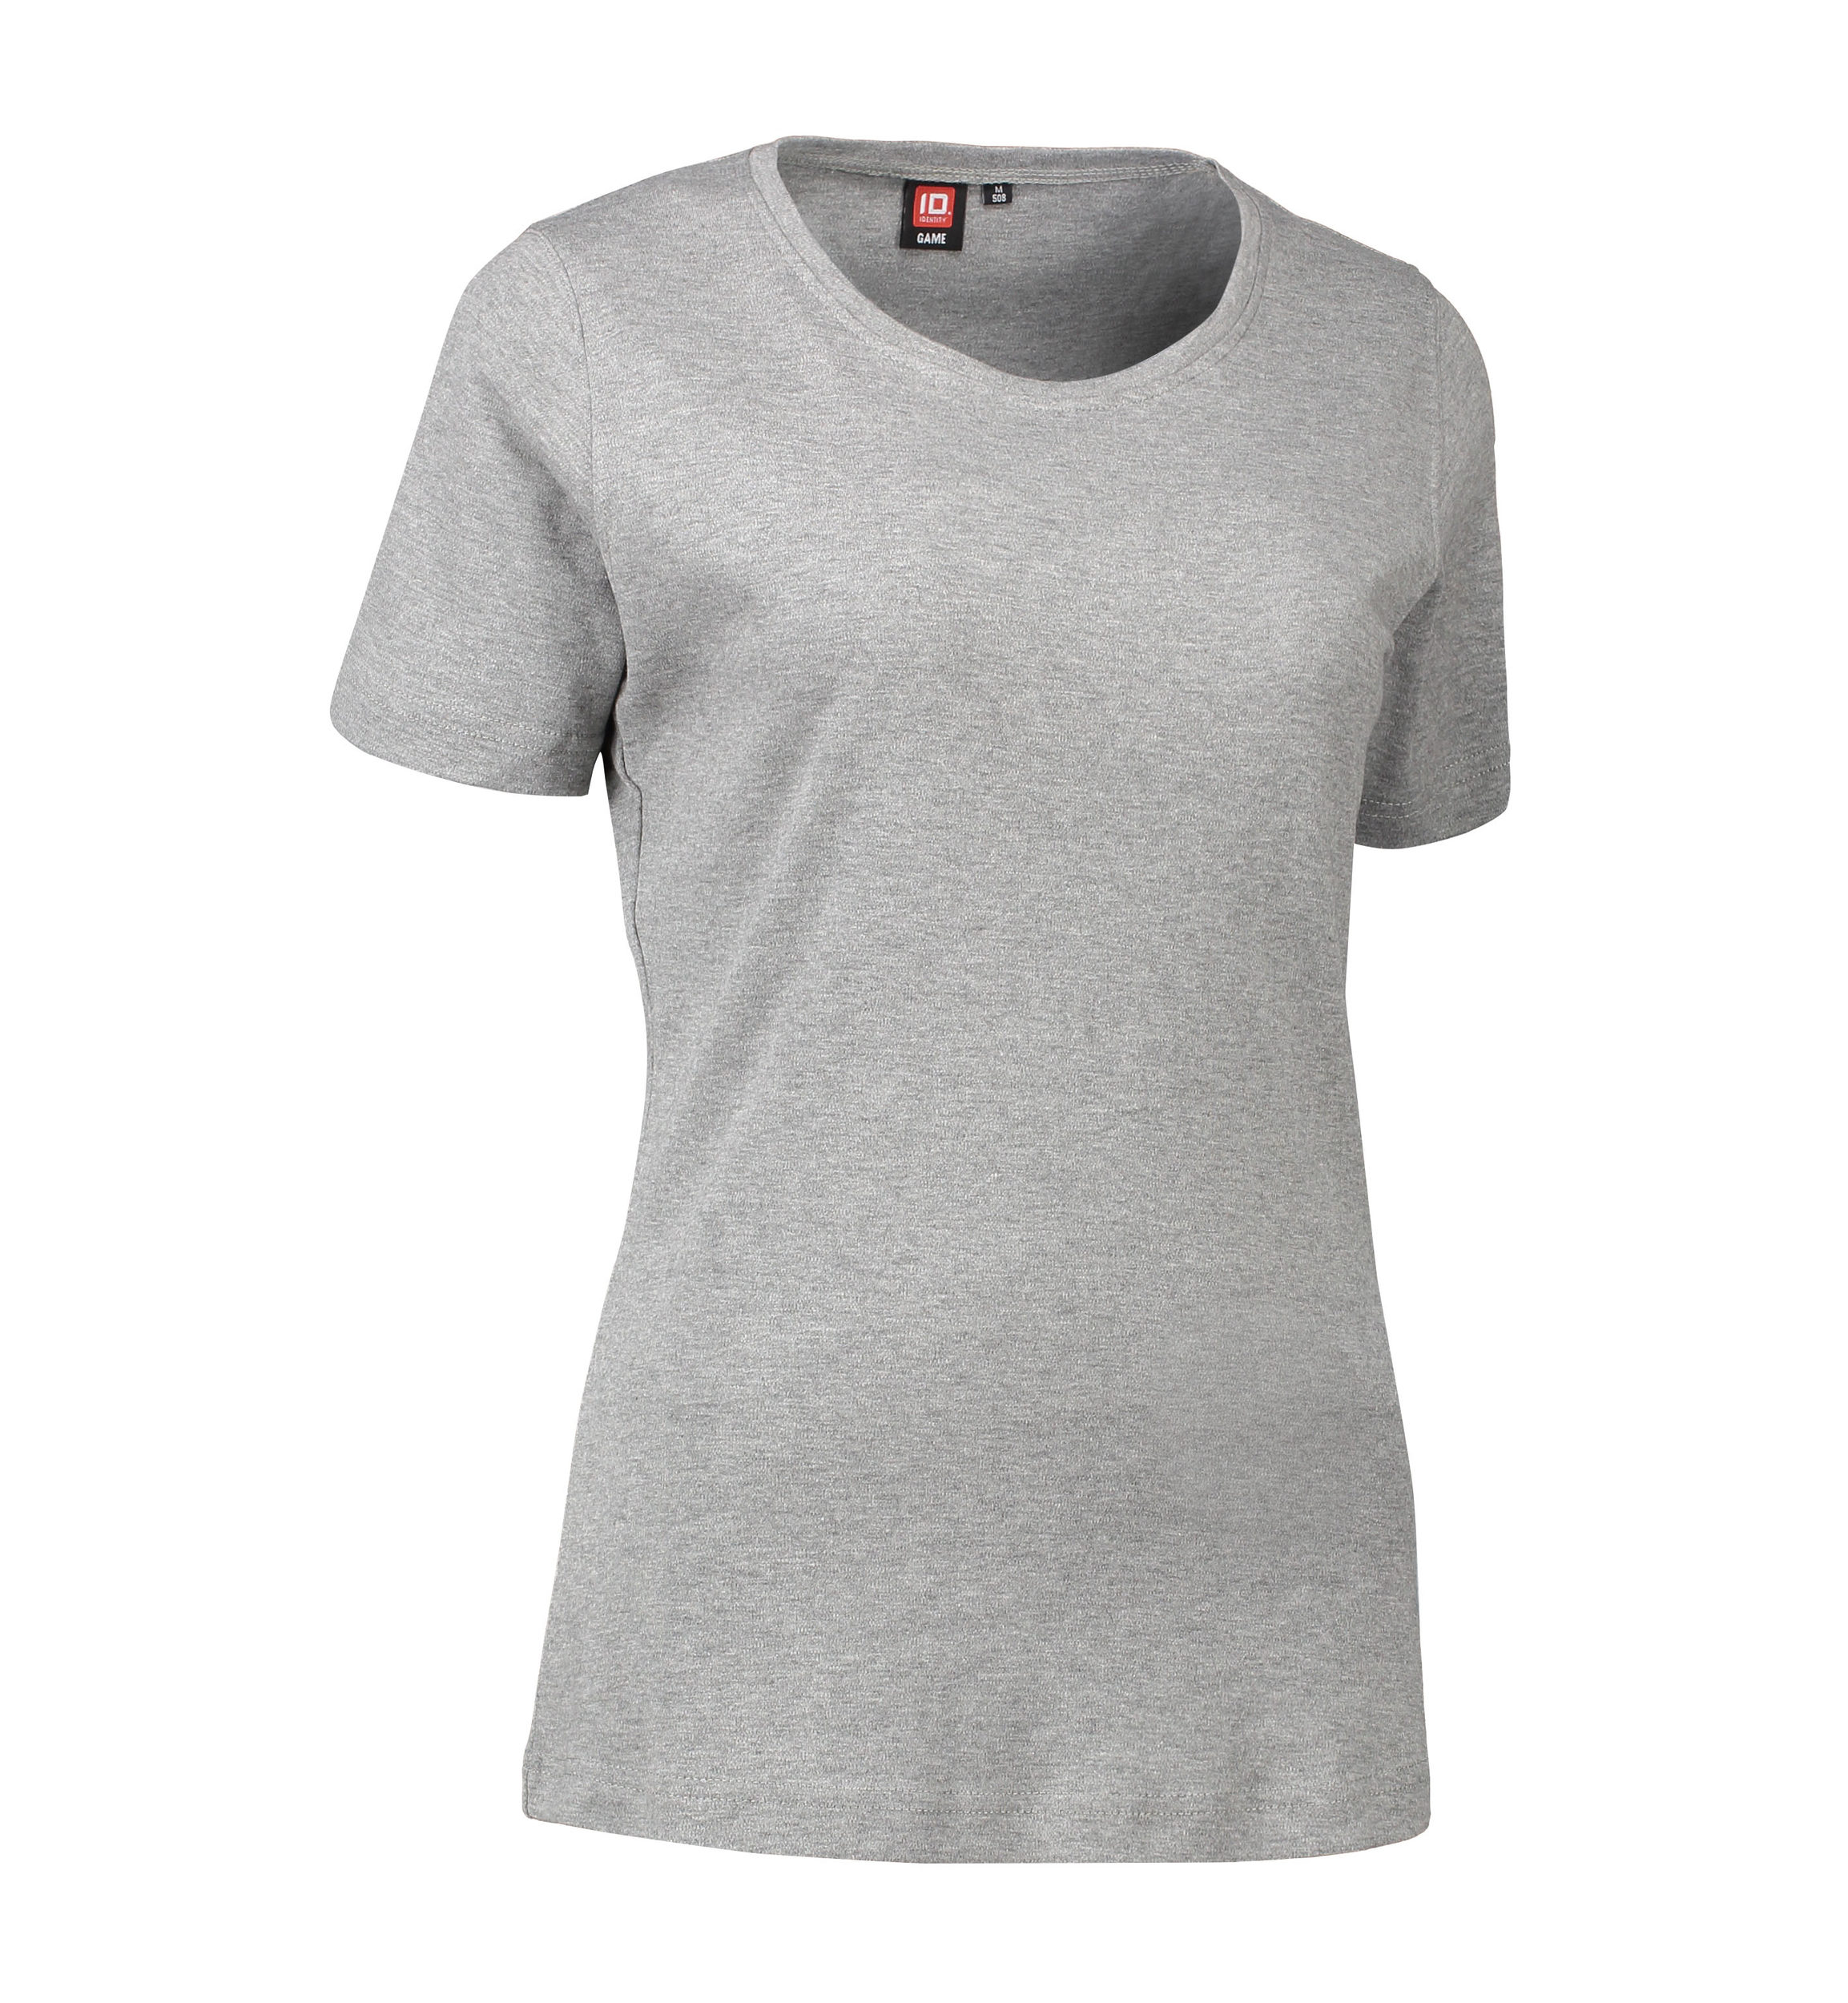 Billede af Dame t-shirt med rund hals i grå - M hos Sygeplejebutikken.dk